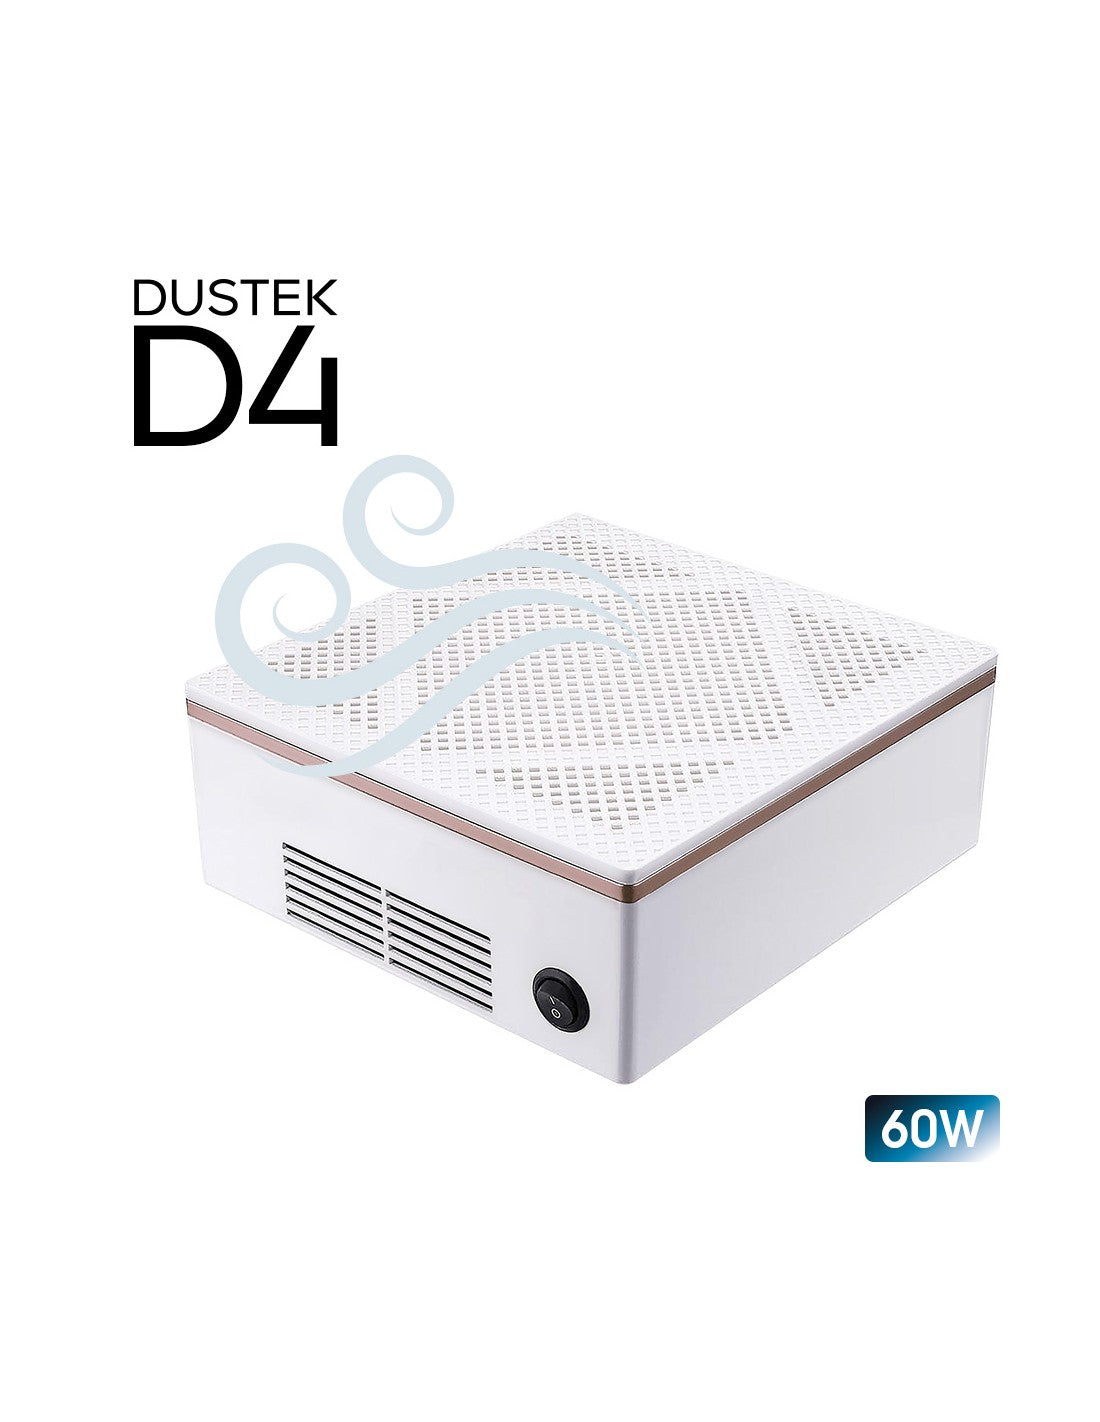 Aspiratore Dustek D4 da tavolo 60W – Gellica